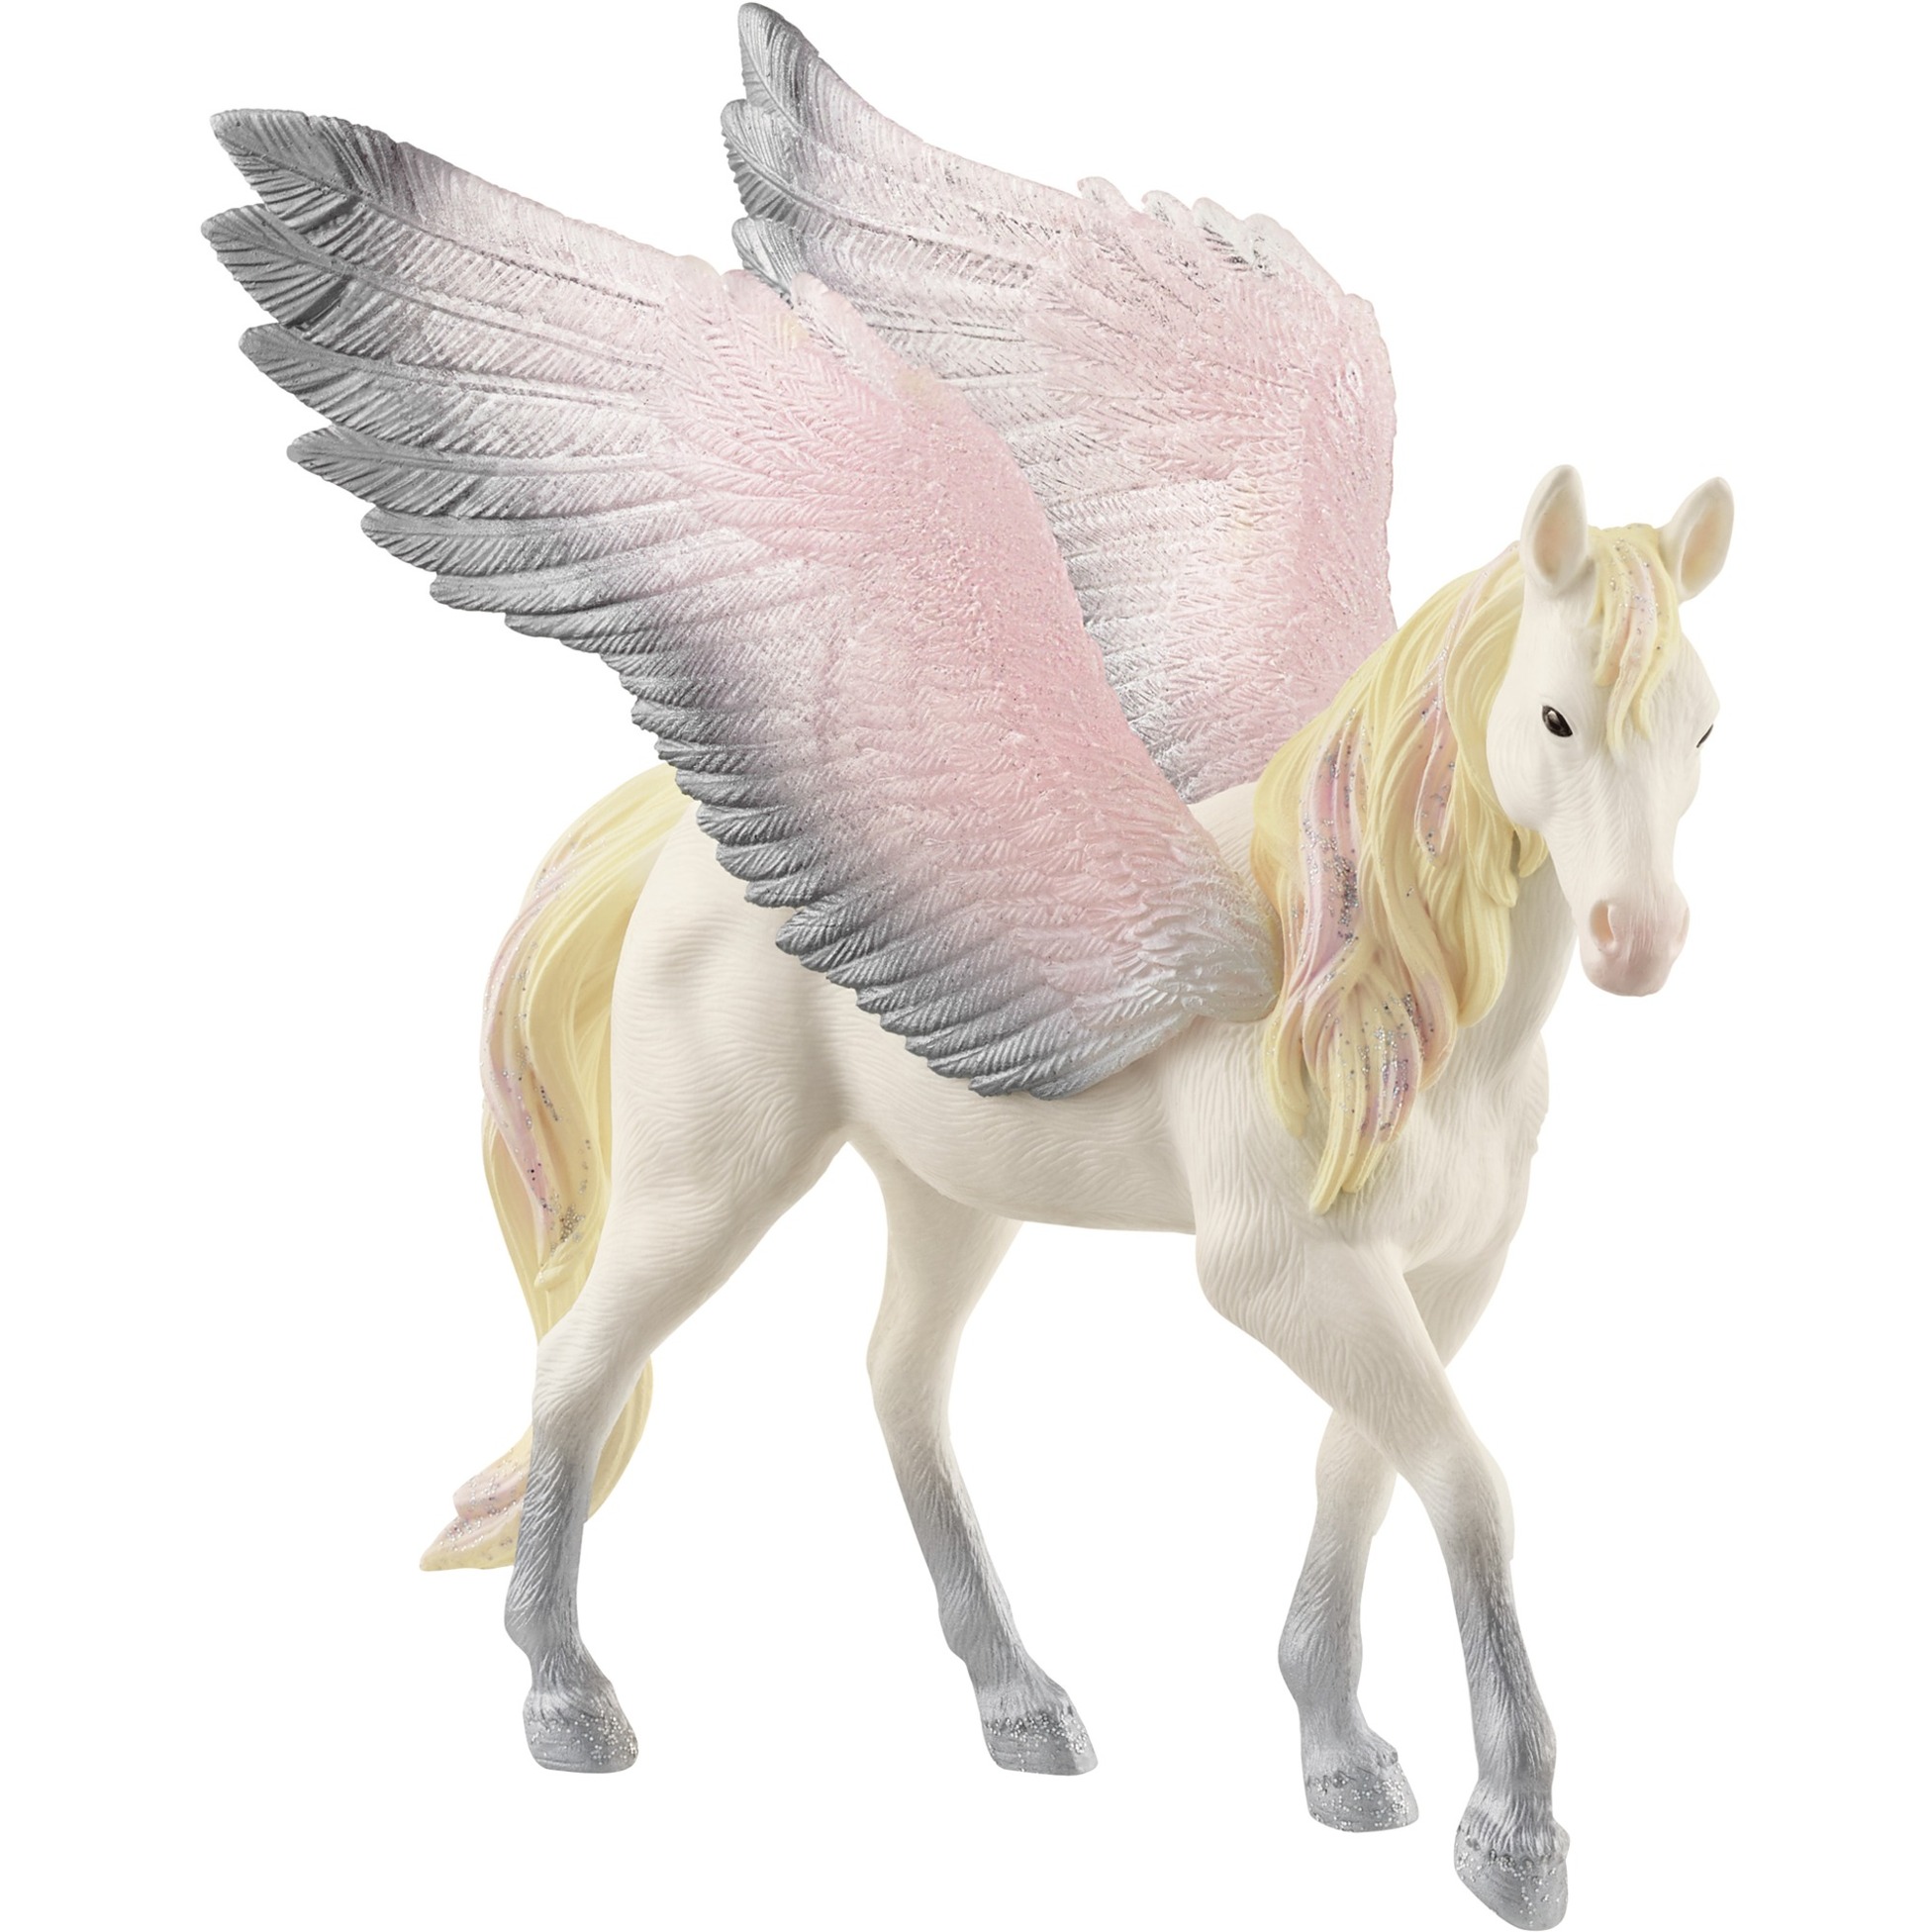 Image of Alternate - Bayala Pegasus, Spielfigur online einkaufen bei Alternate